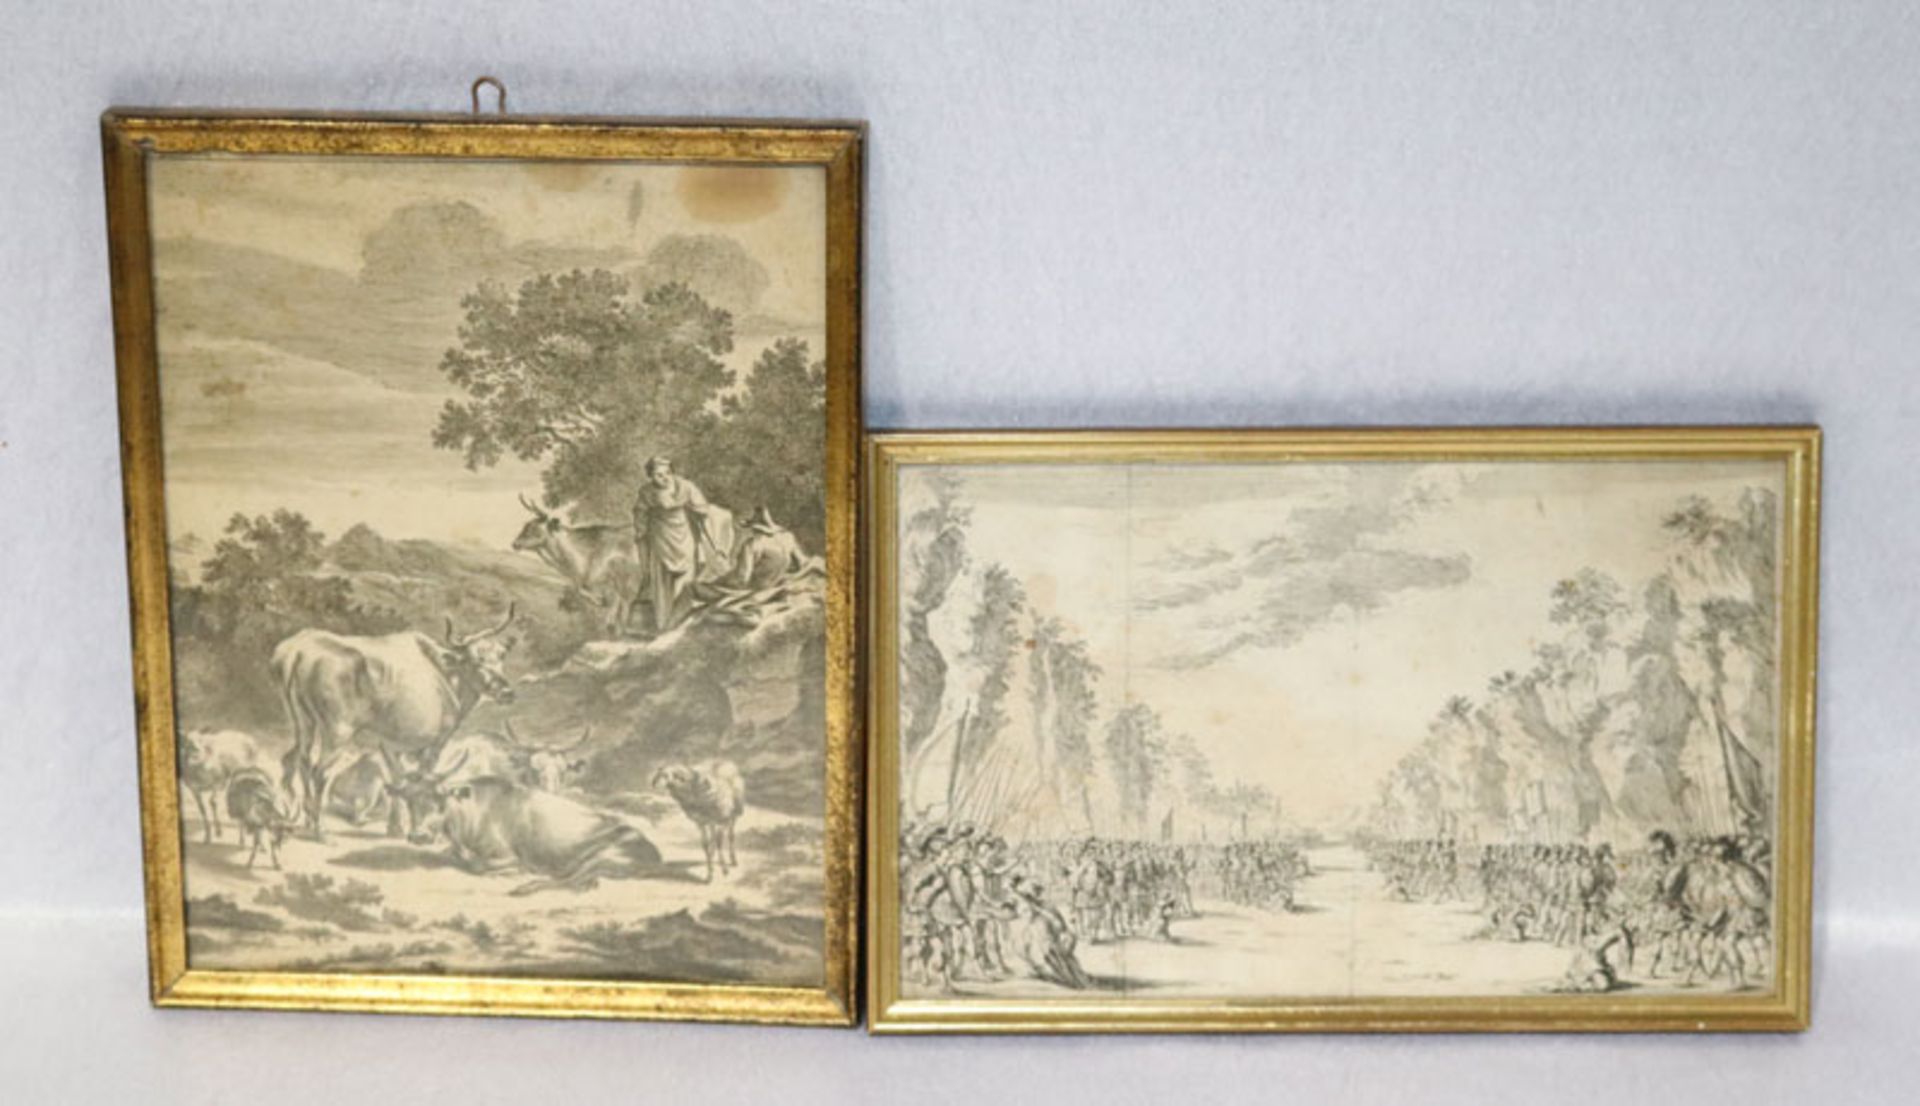 2 Stiche 'Schlacht-Szenerie' und 'Kuhhirte', Blätter teils fleckig, 18. Jahrhundert, unter Glas